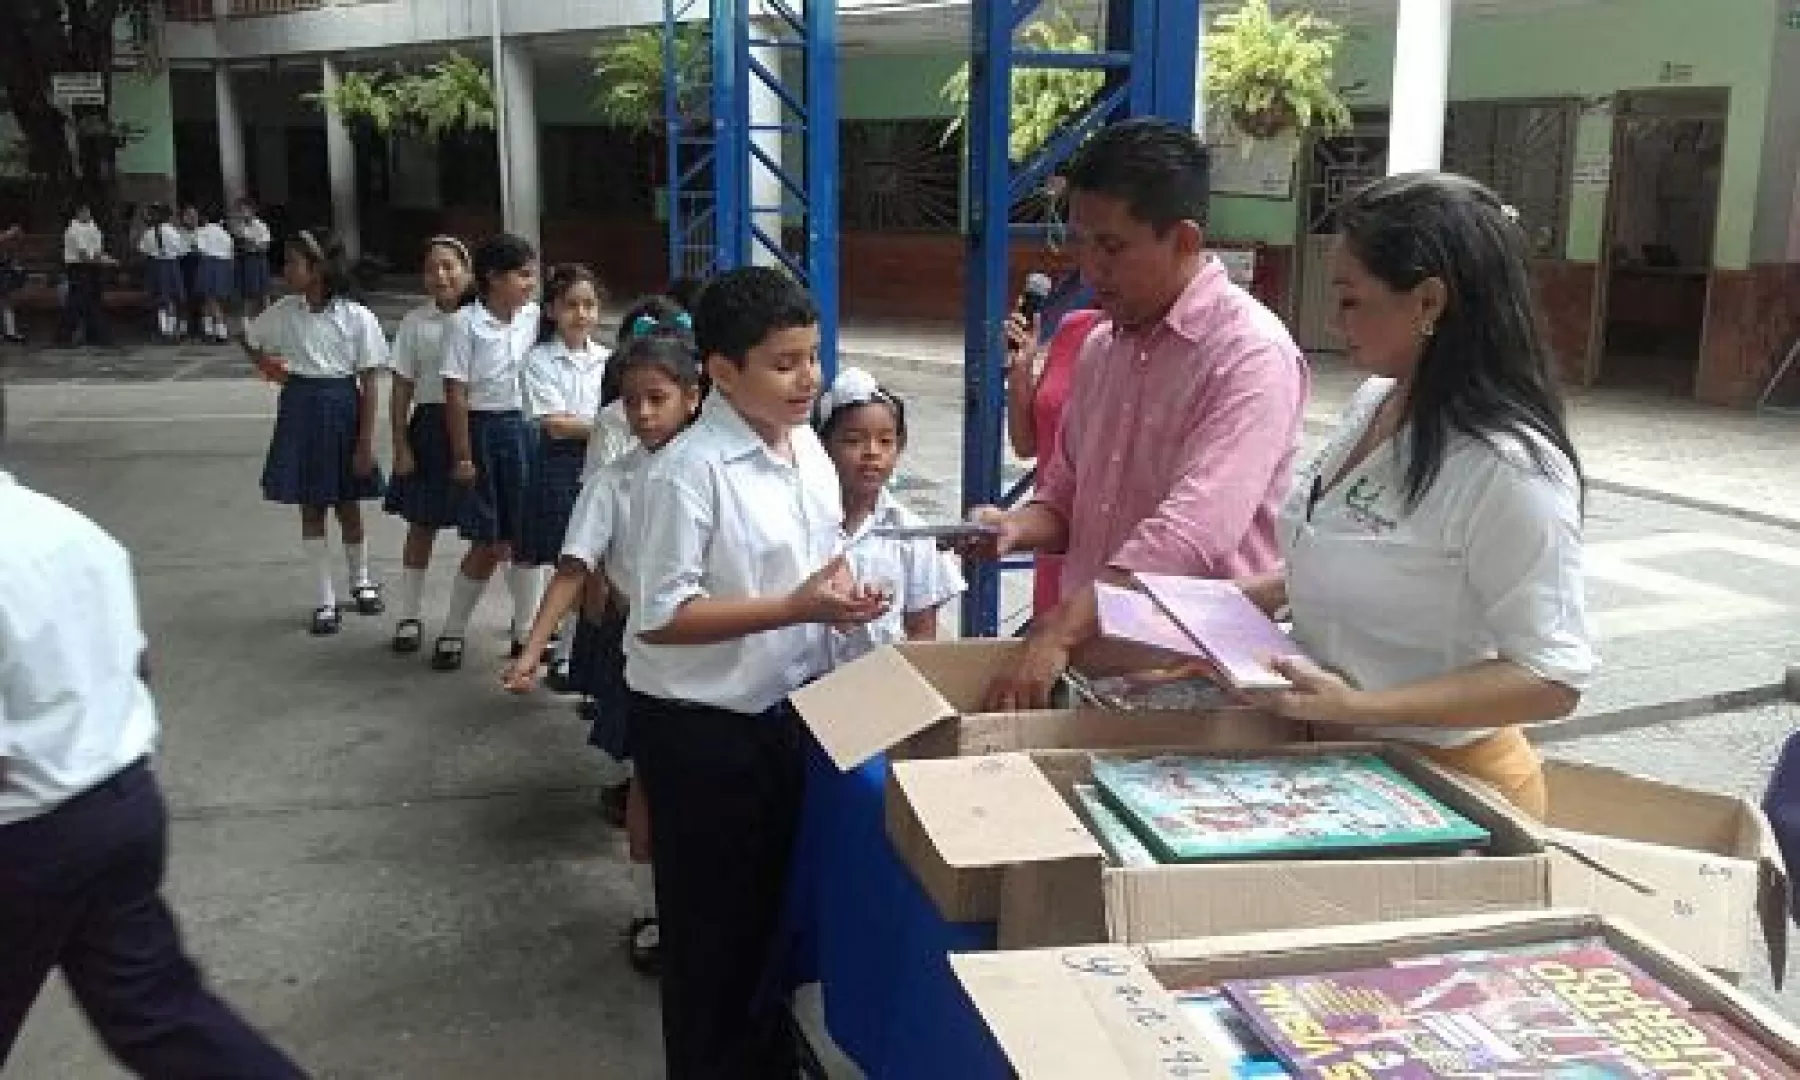 El Ministerio De Cultura entregó libros nuevos regalados a más de 14 mil estudiantes de instituciones educativas públicas del nunicipio de Arauca. En las próximas semanas siguen los otros 6 municipios del departamento.